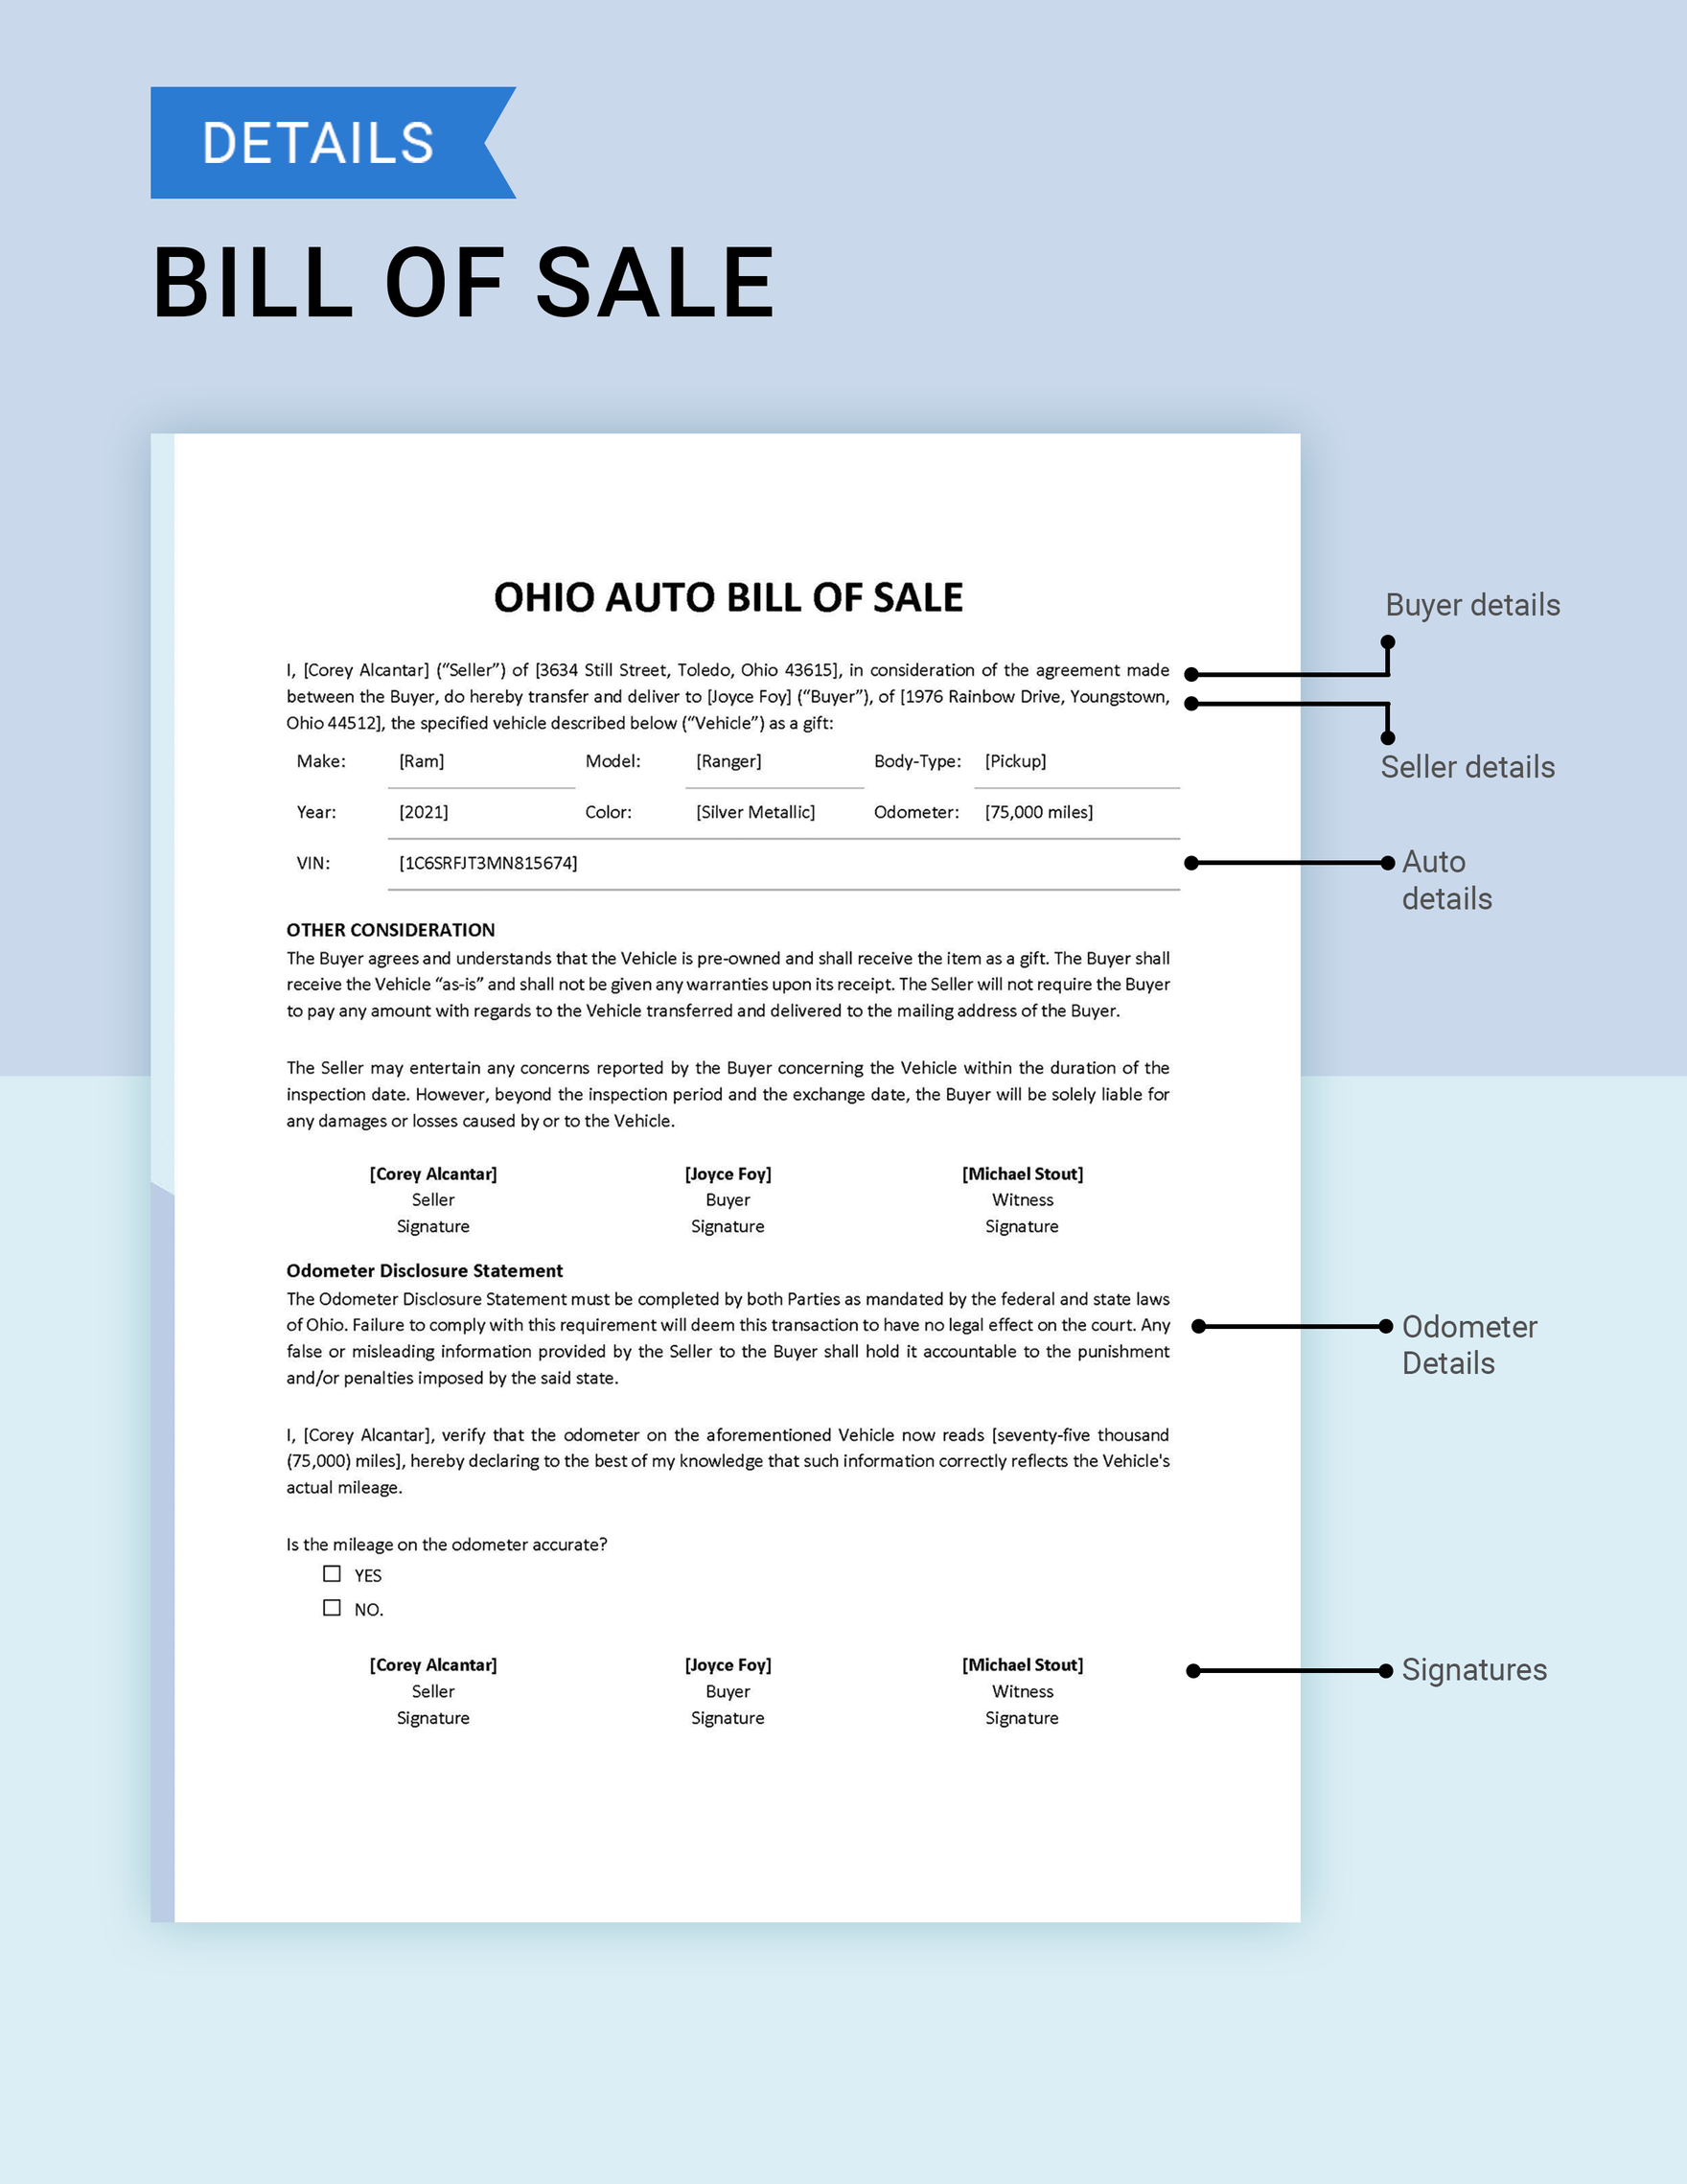 Ohio Auto Bill of Sale Template